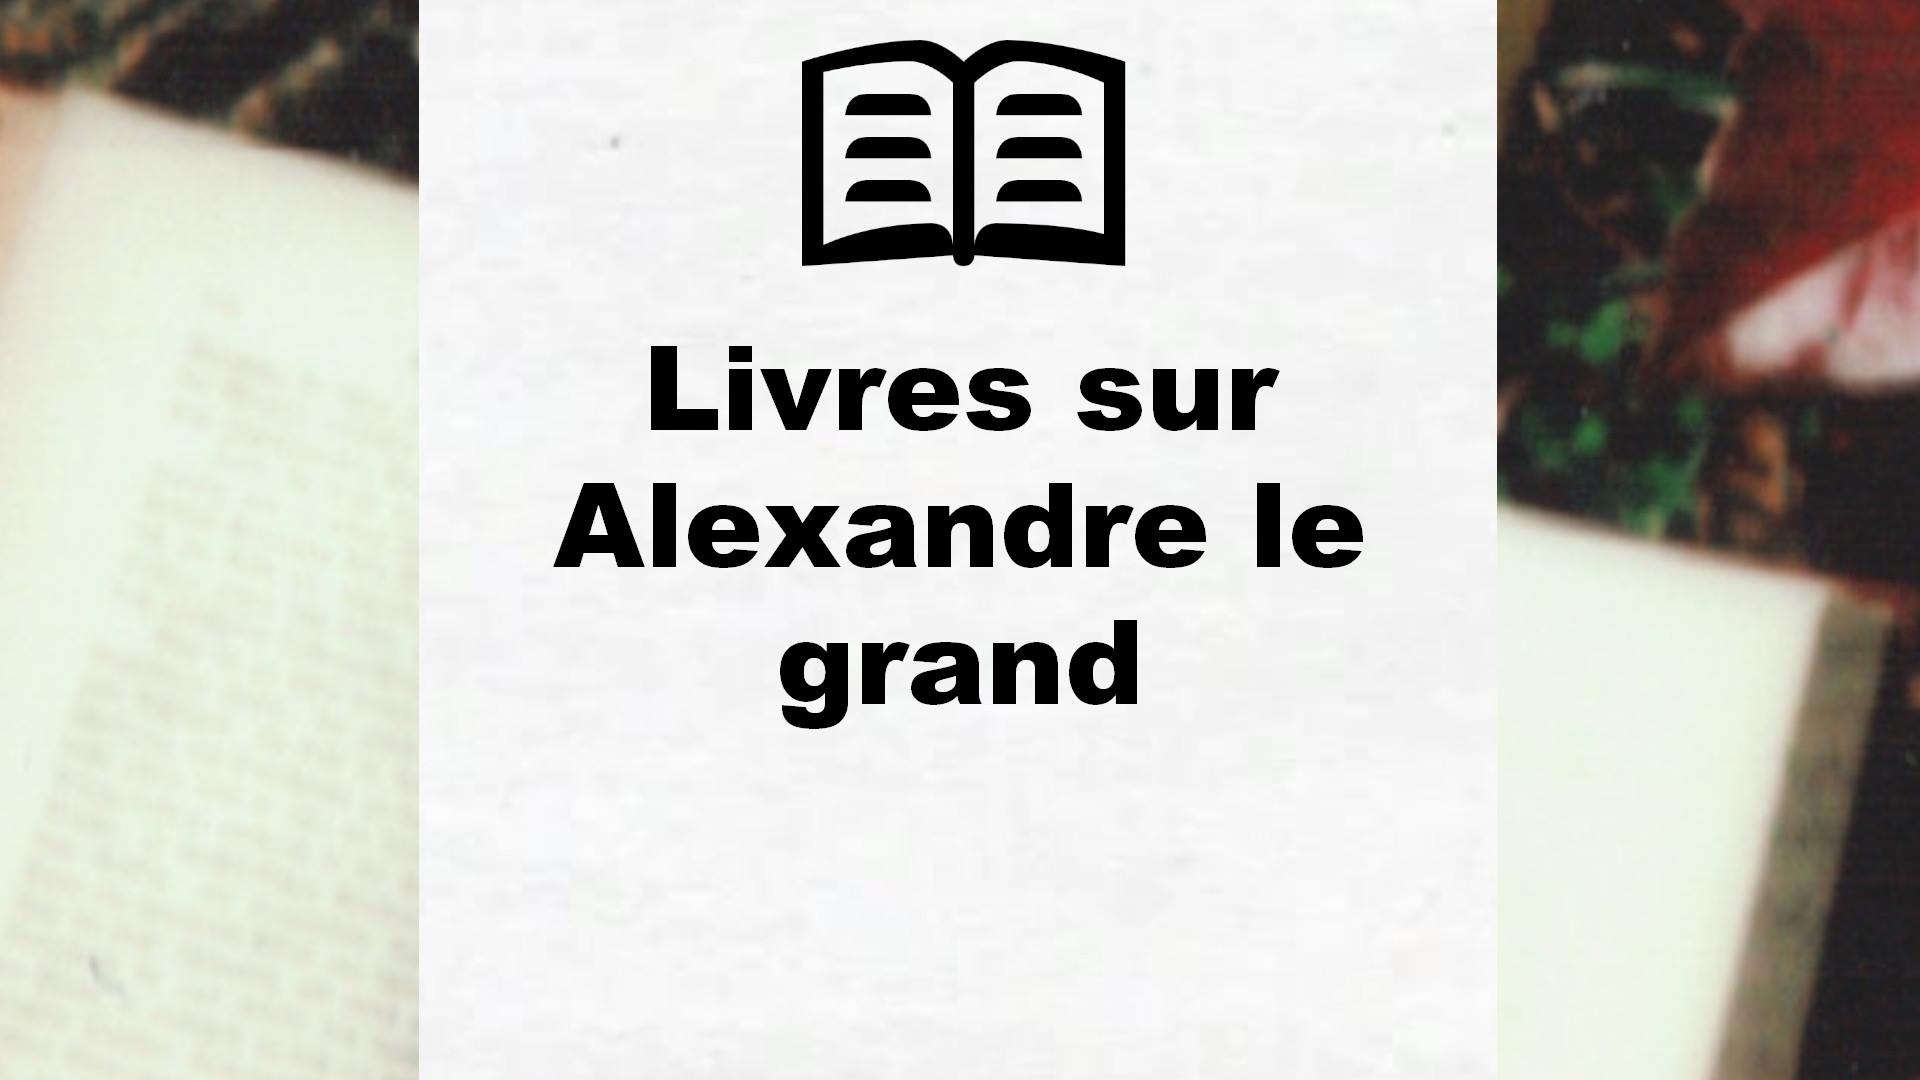 Livres sur Alexandre le grand